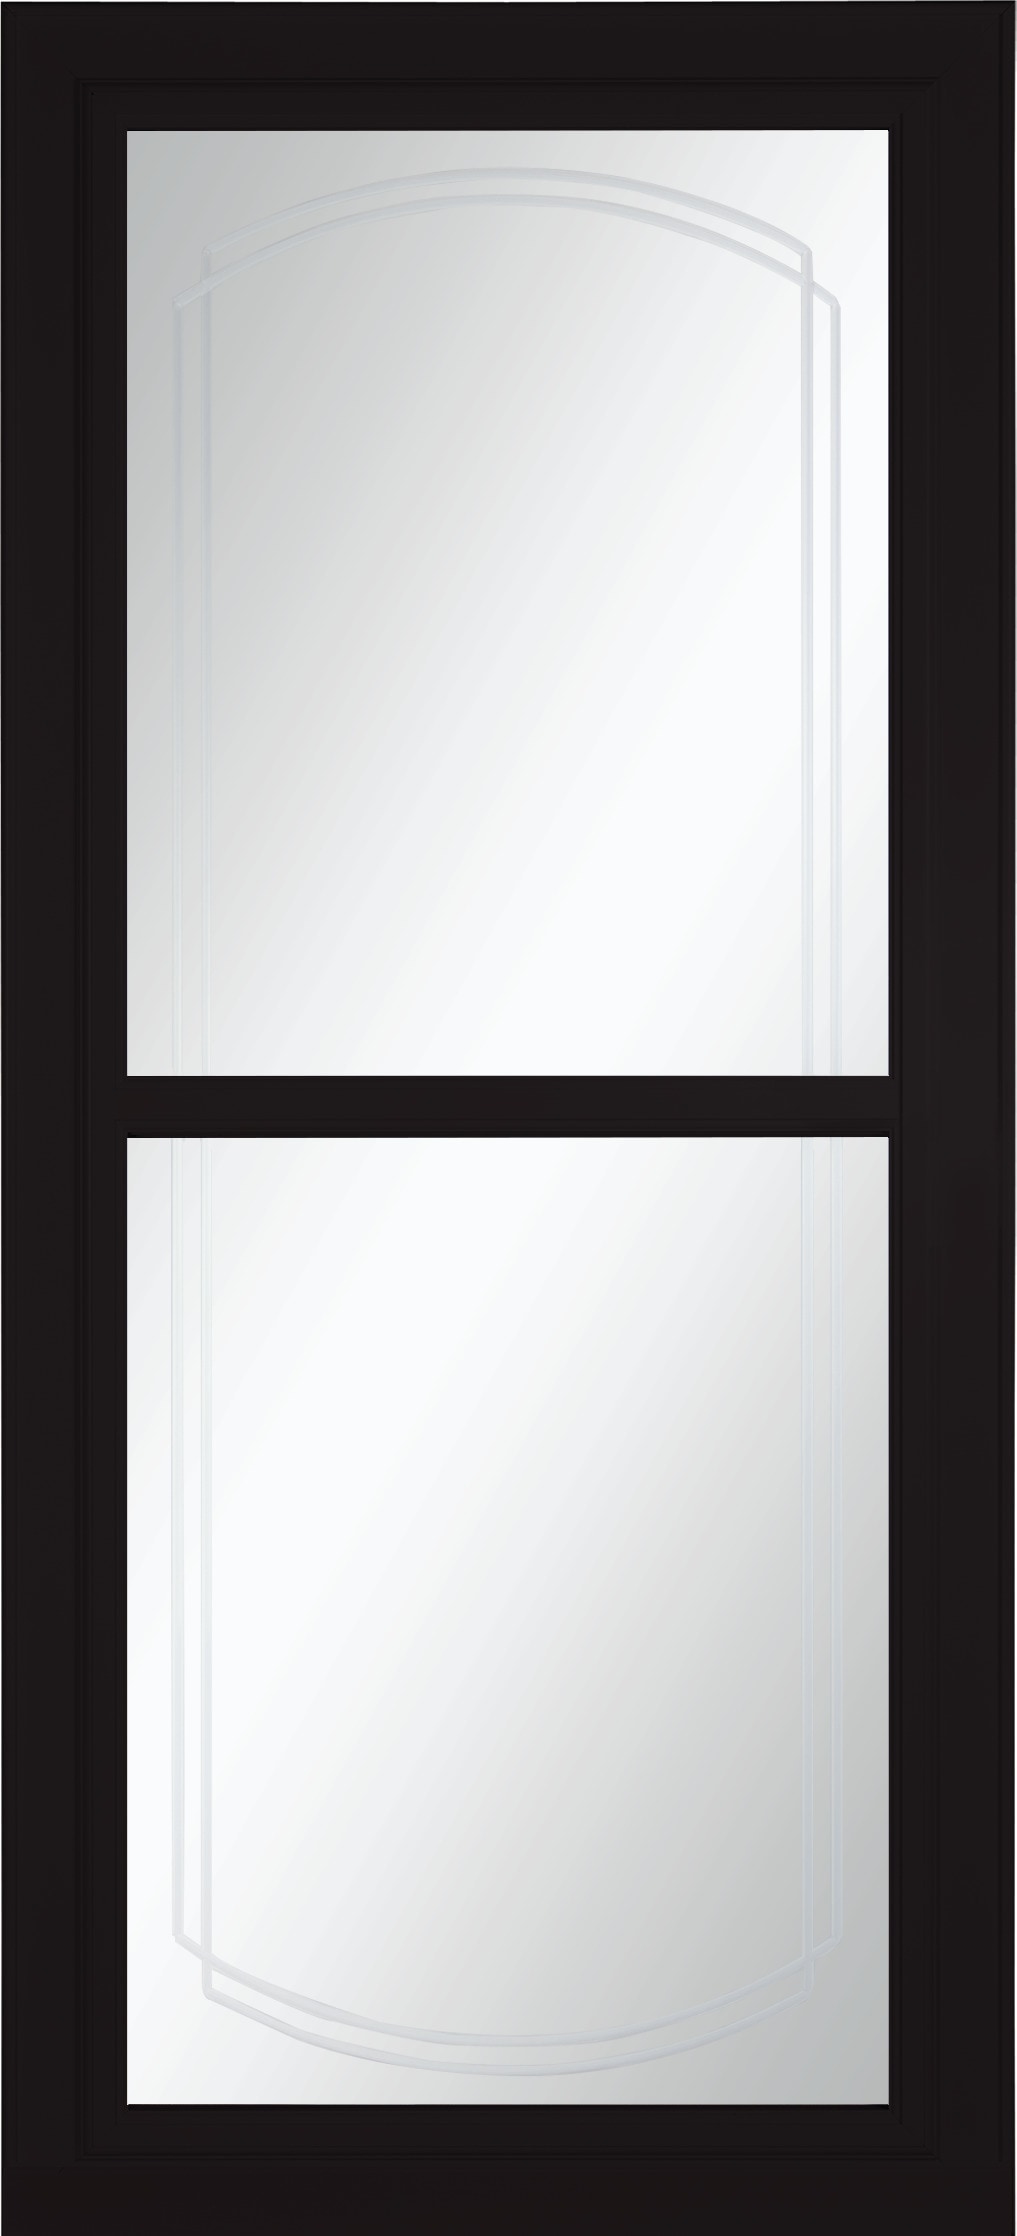 We love how black trim ties - Pella Windows and Doors